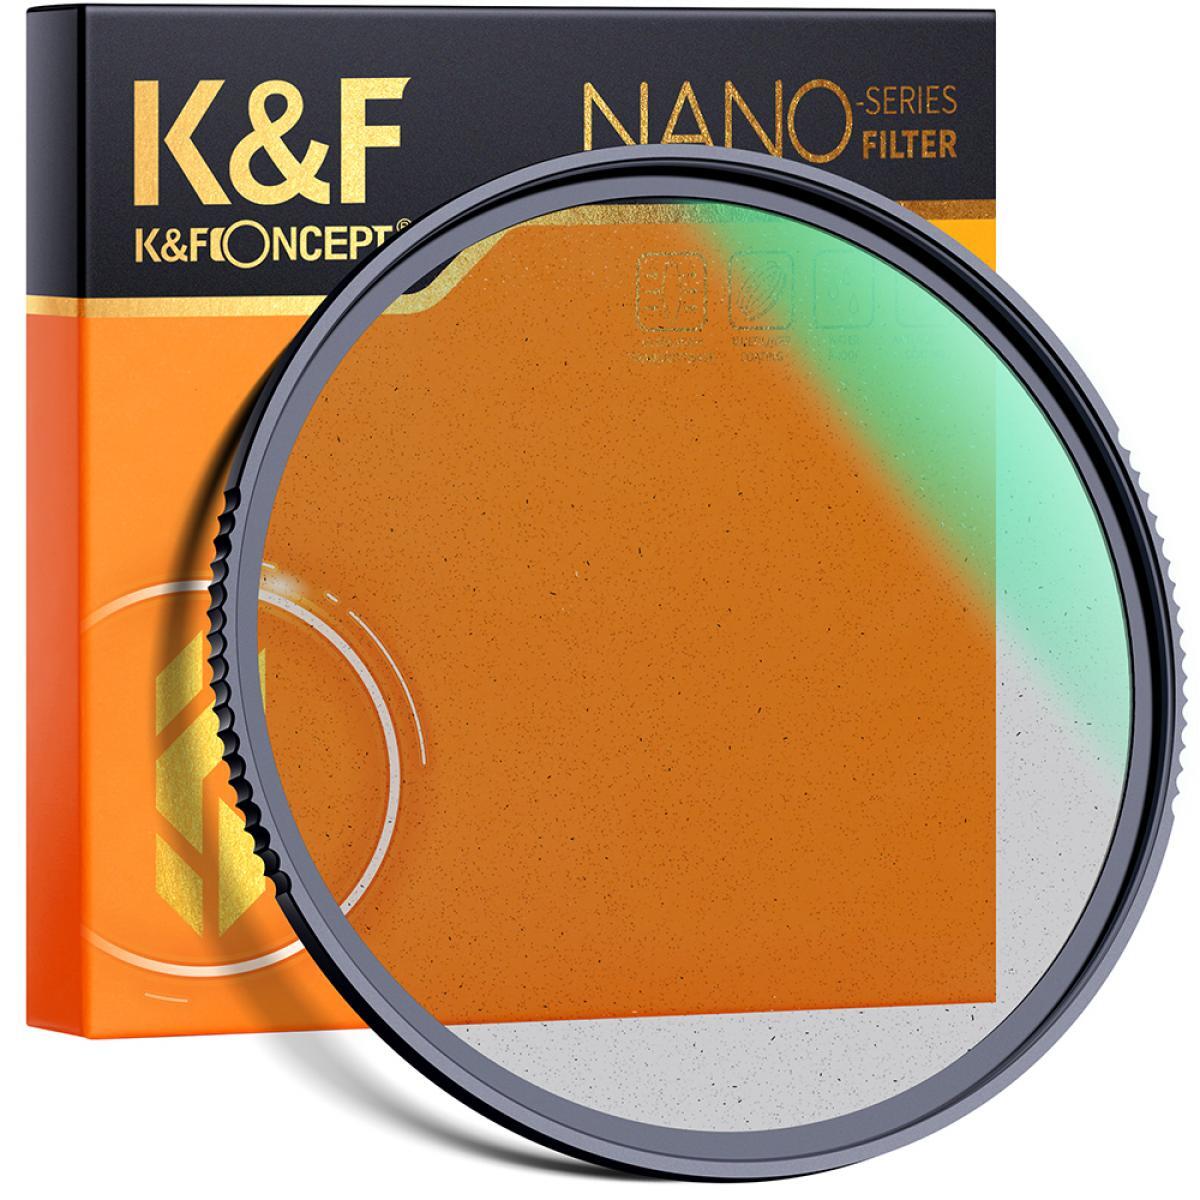 Fiorenzato F4 Nano